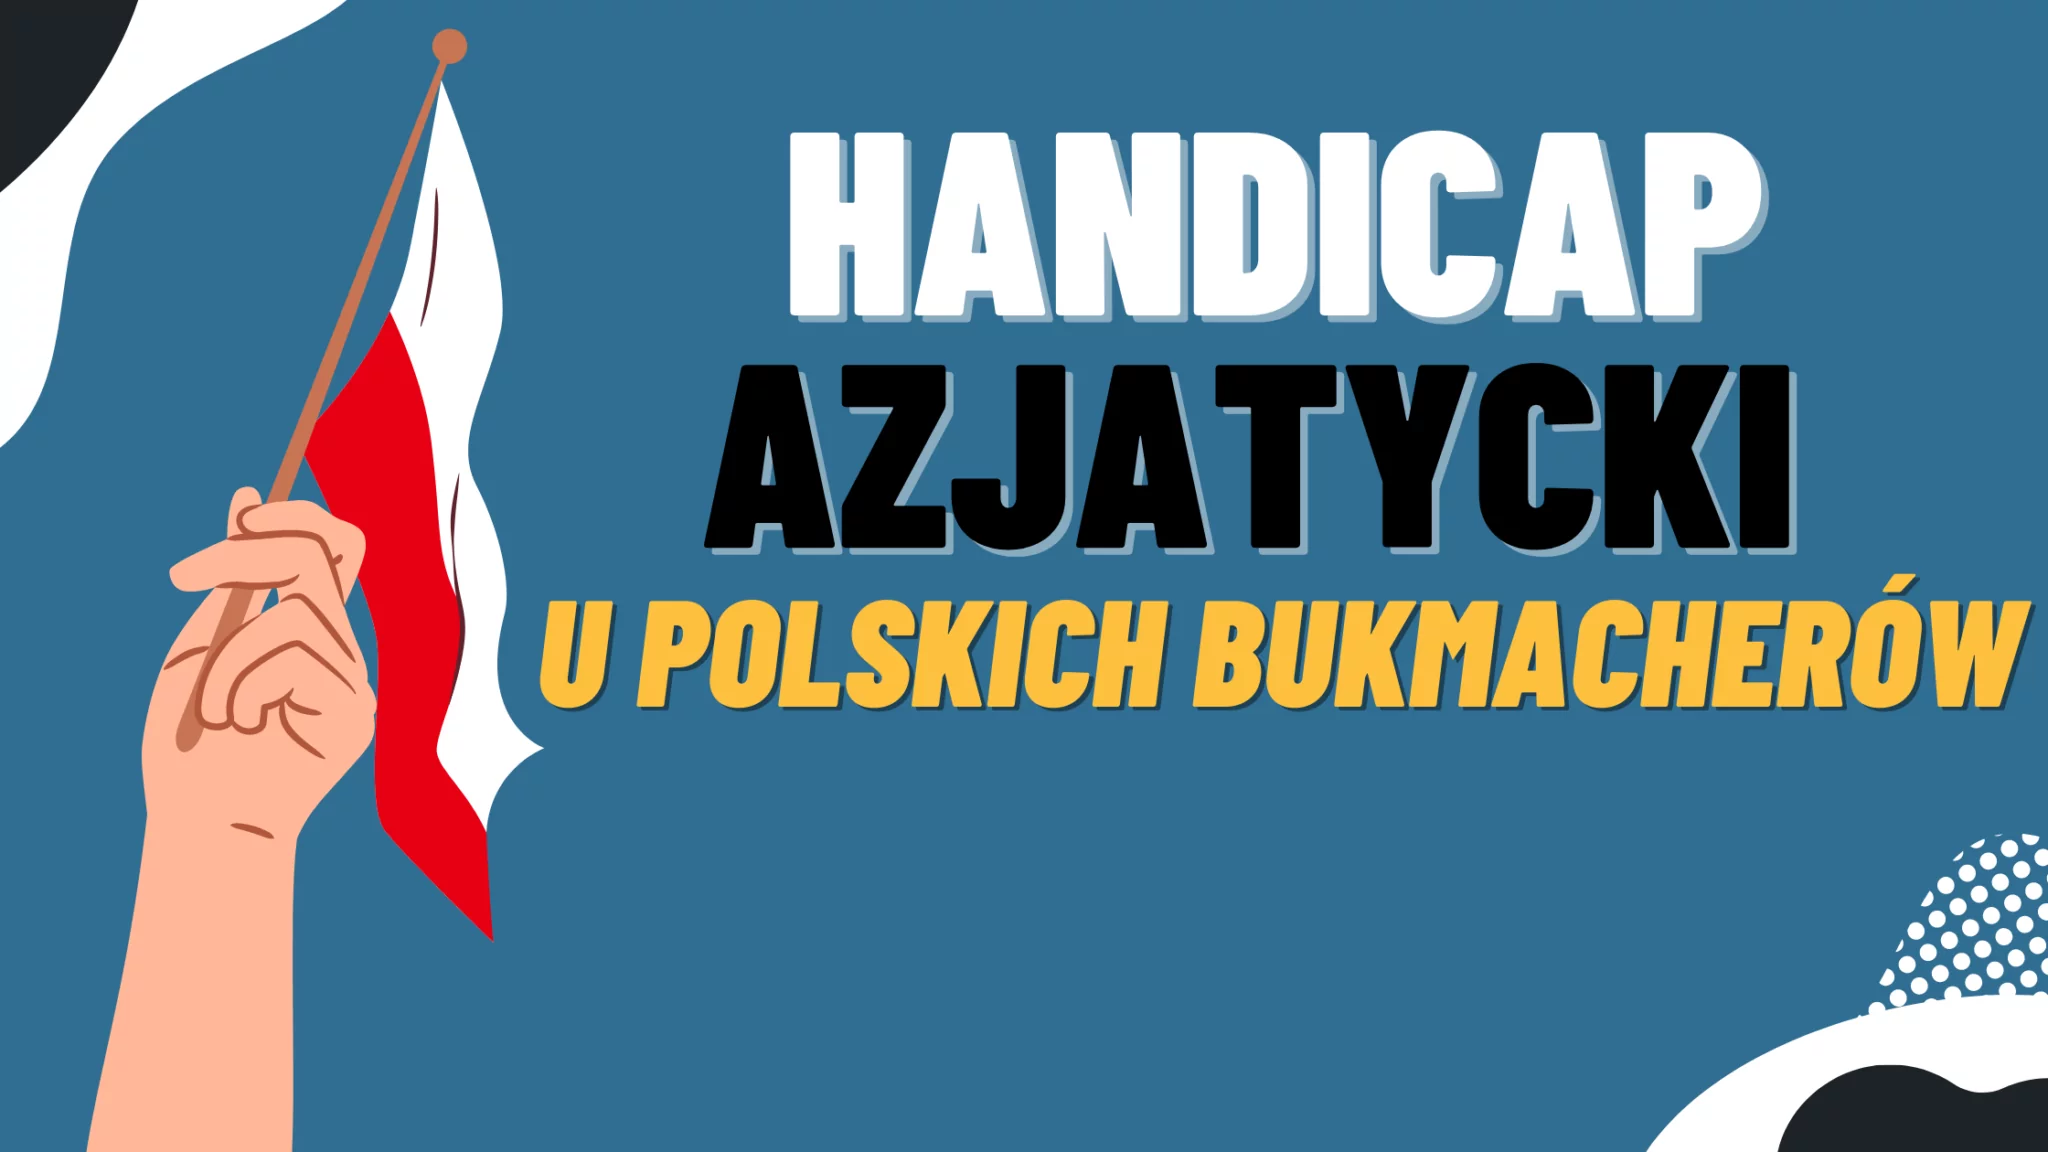 Handicap azjatycki u polskich bukmacherów